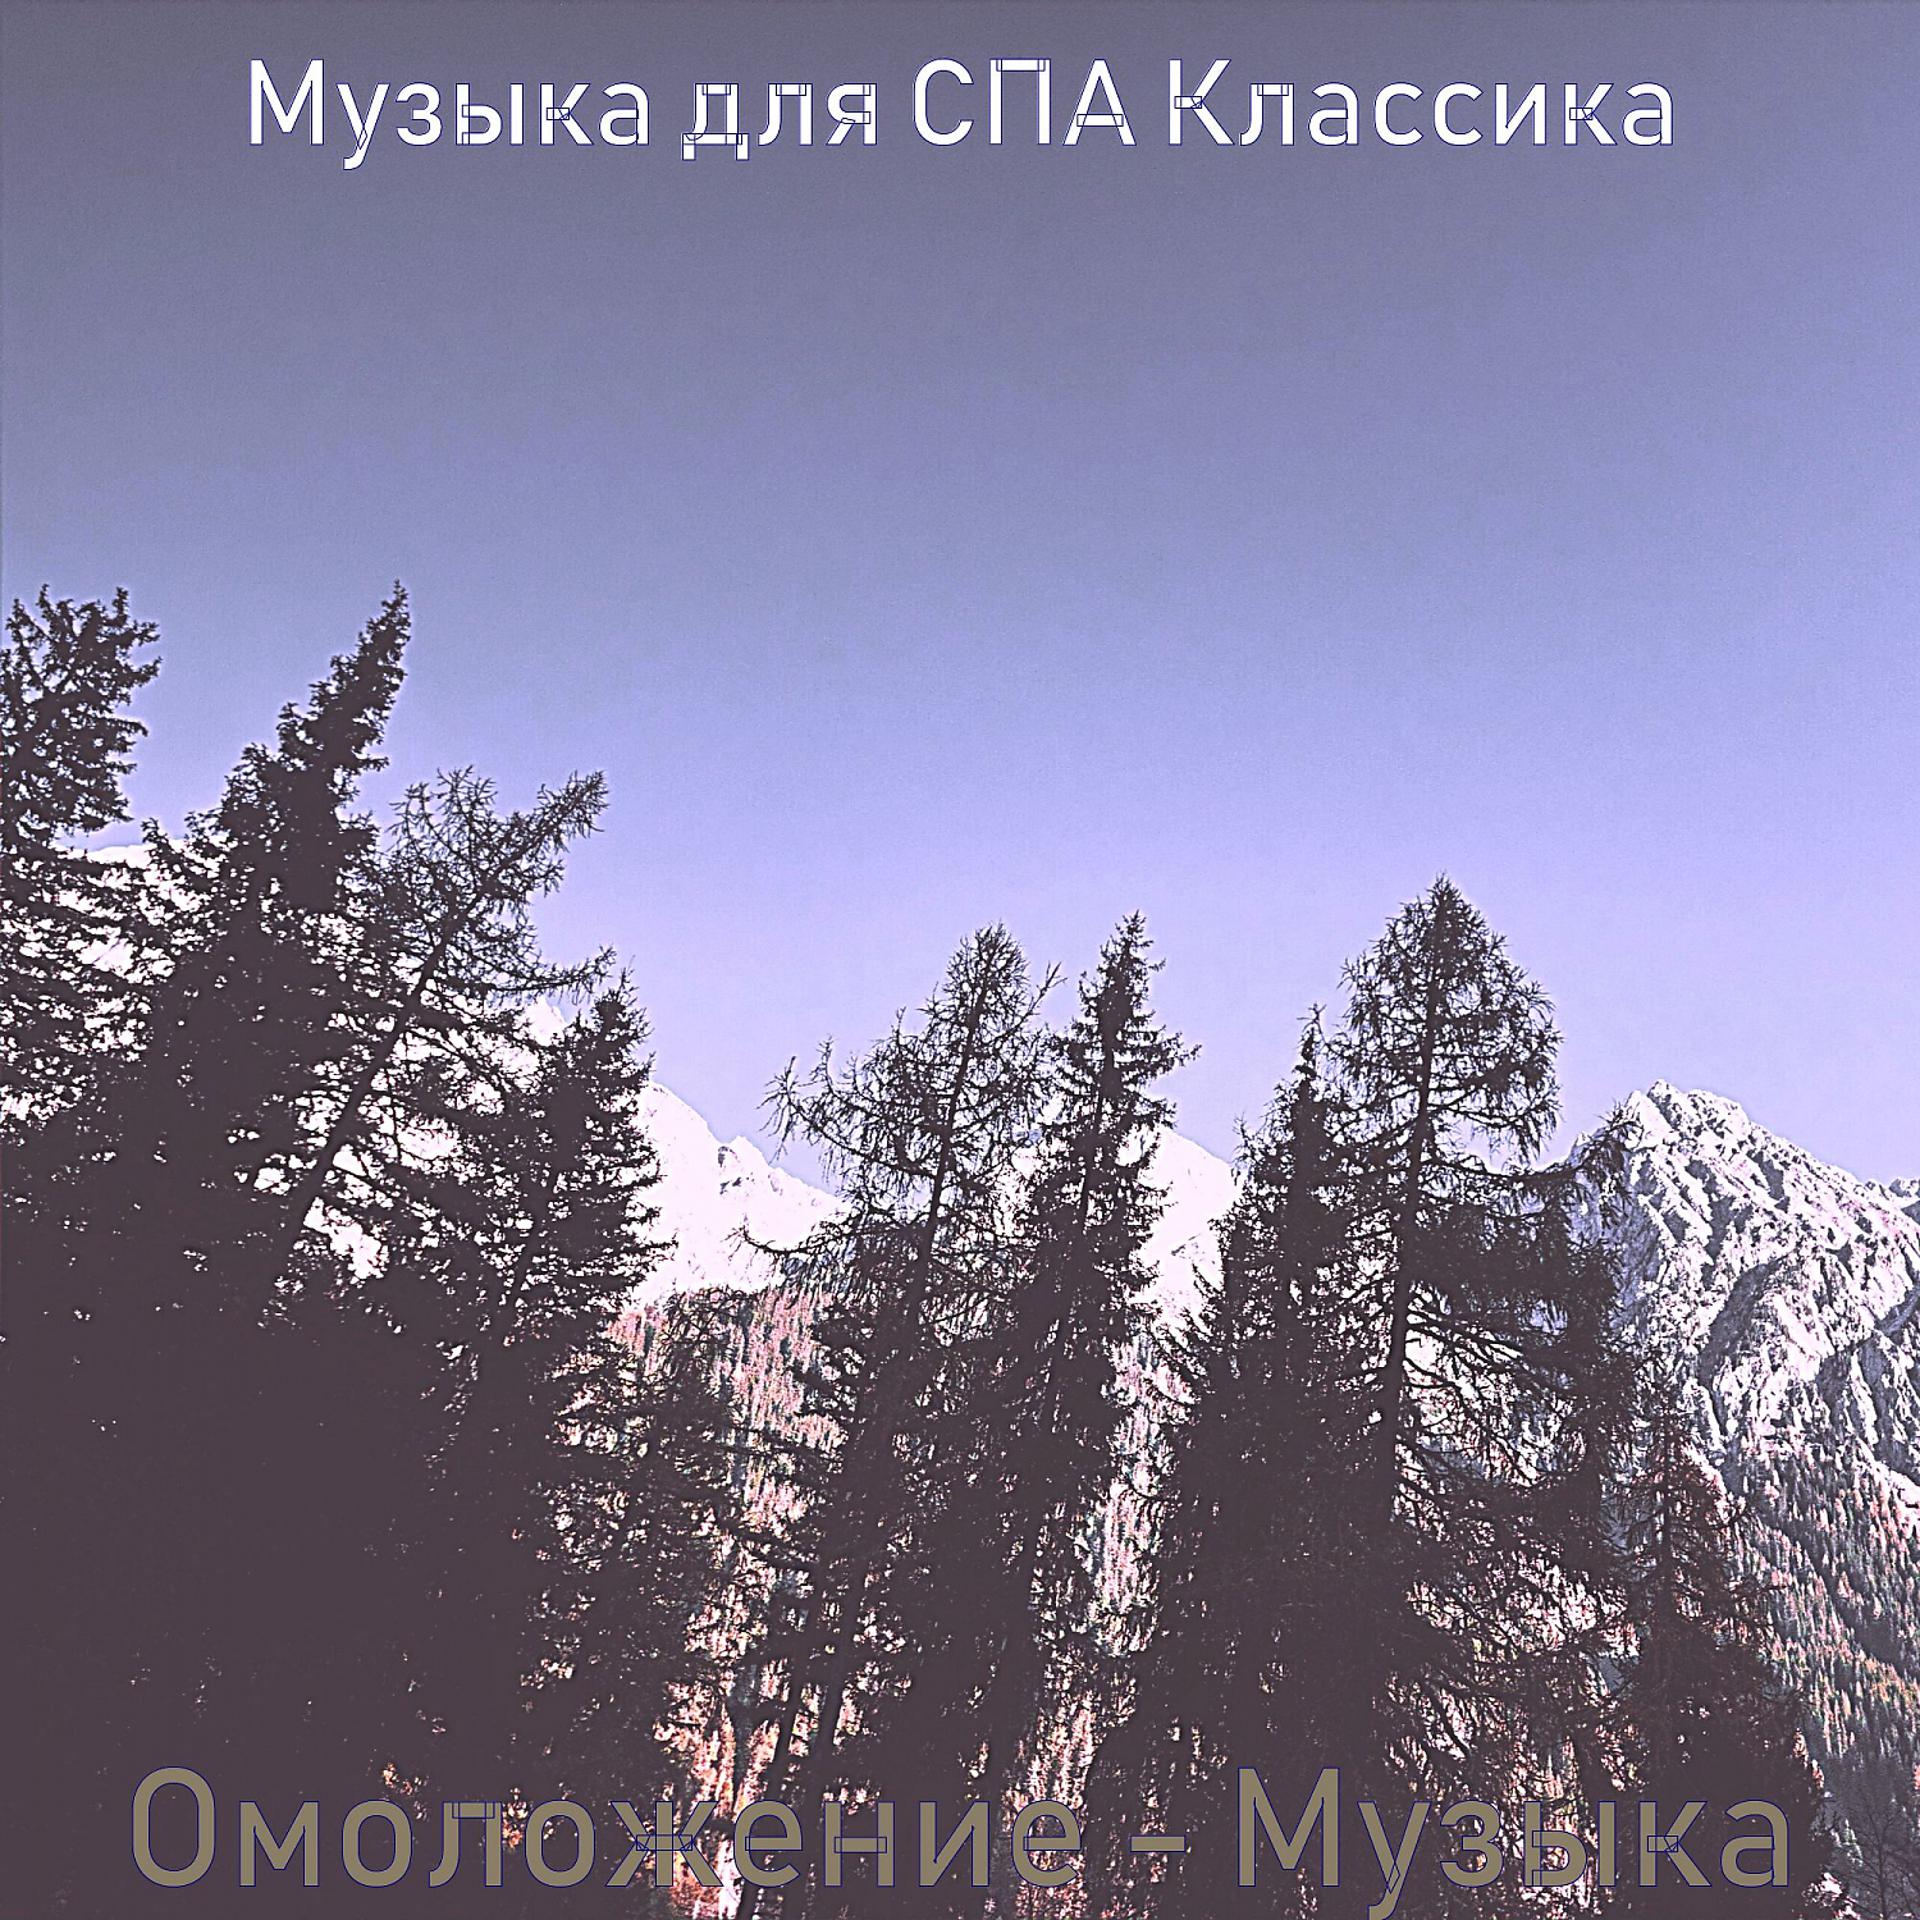 Постер альбома Омоложение - Музыка